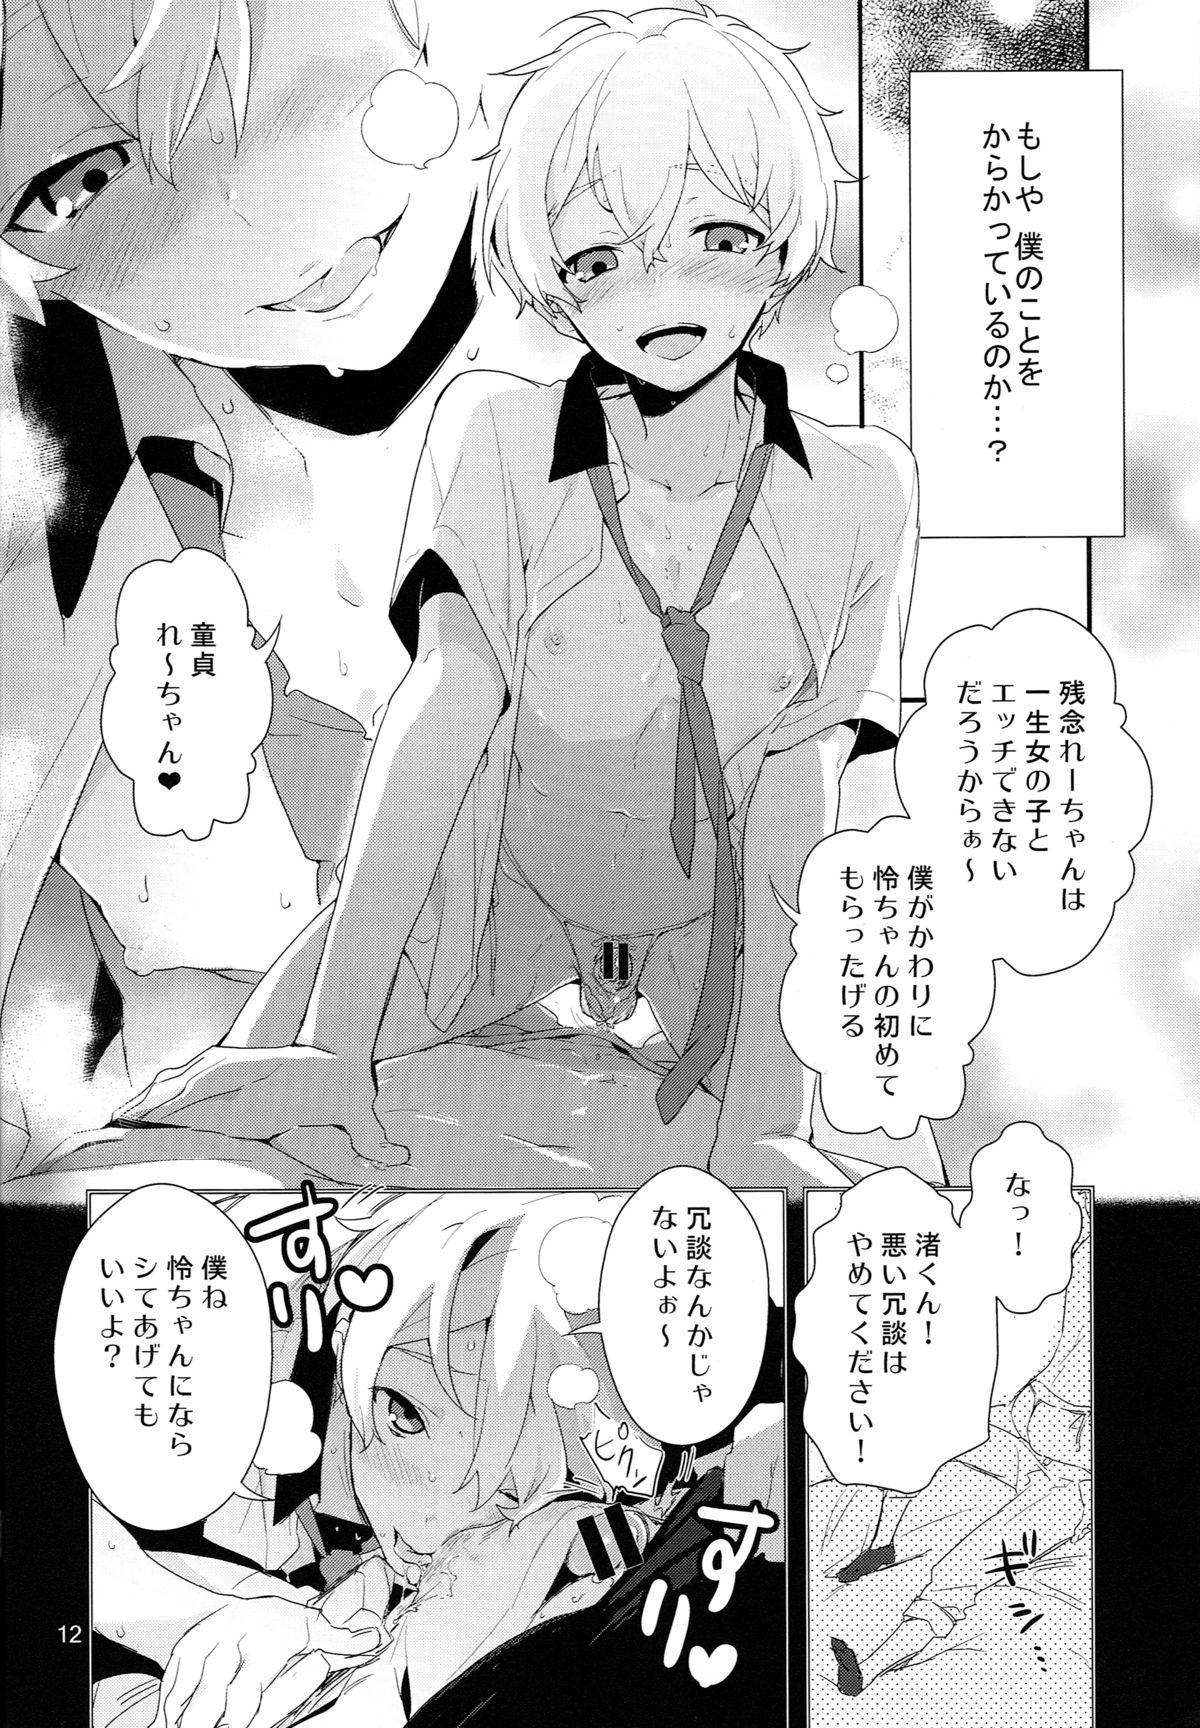 Massage Ryuugazaki nanigashi wa seiyoku wo moteamashite iru. - Free Abuse - Page 11